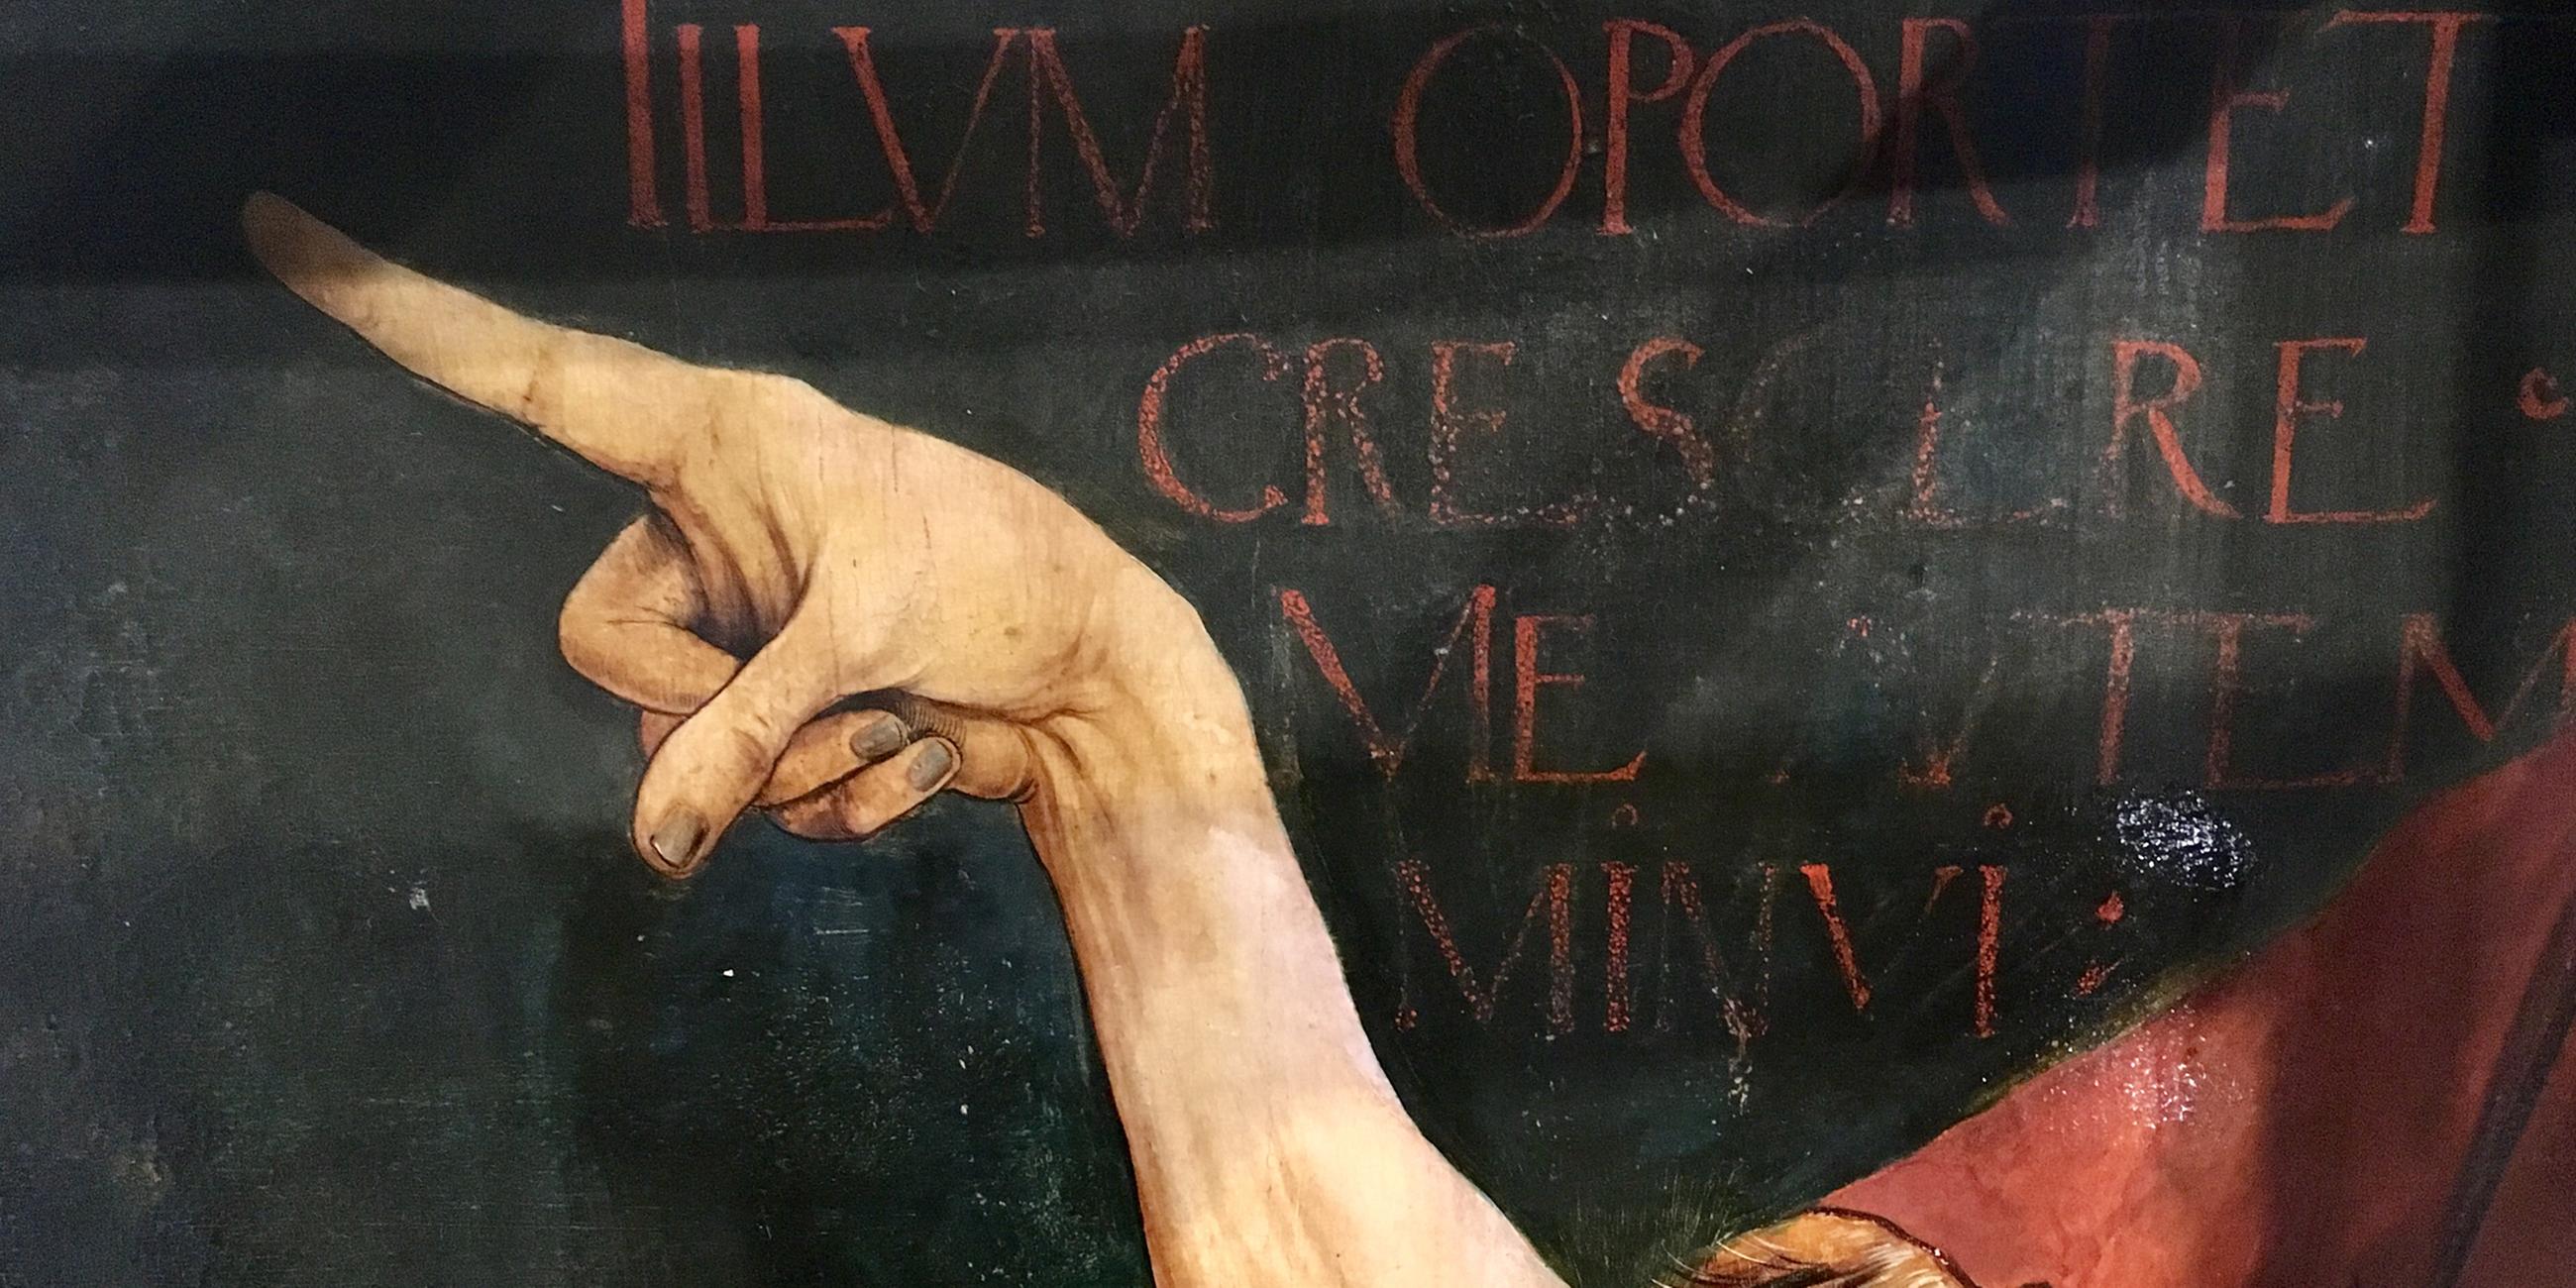 Der überlange Zeigefinger von Johannes dem Täufer auf dem Isenheimer Altar